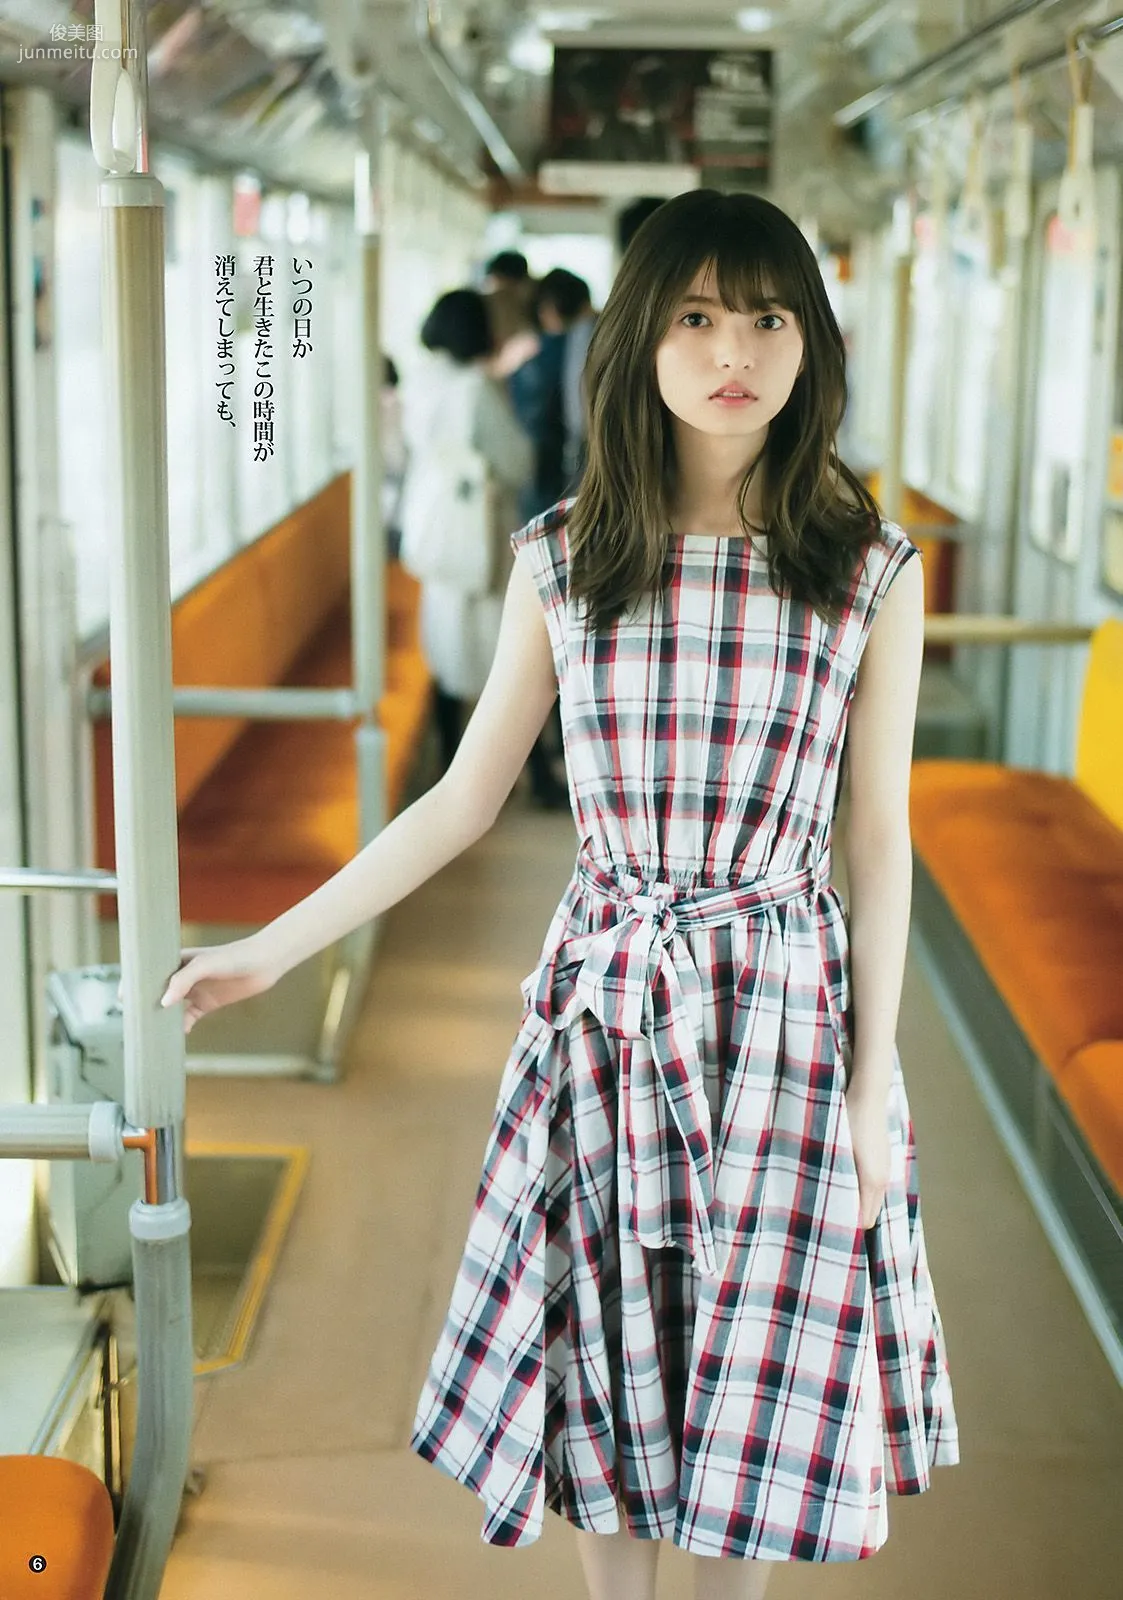 齋藤飛鳥 長澤茉里奈 福原遥 [Weekly Young Jump] 2016年No.31 写真杂志7